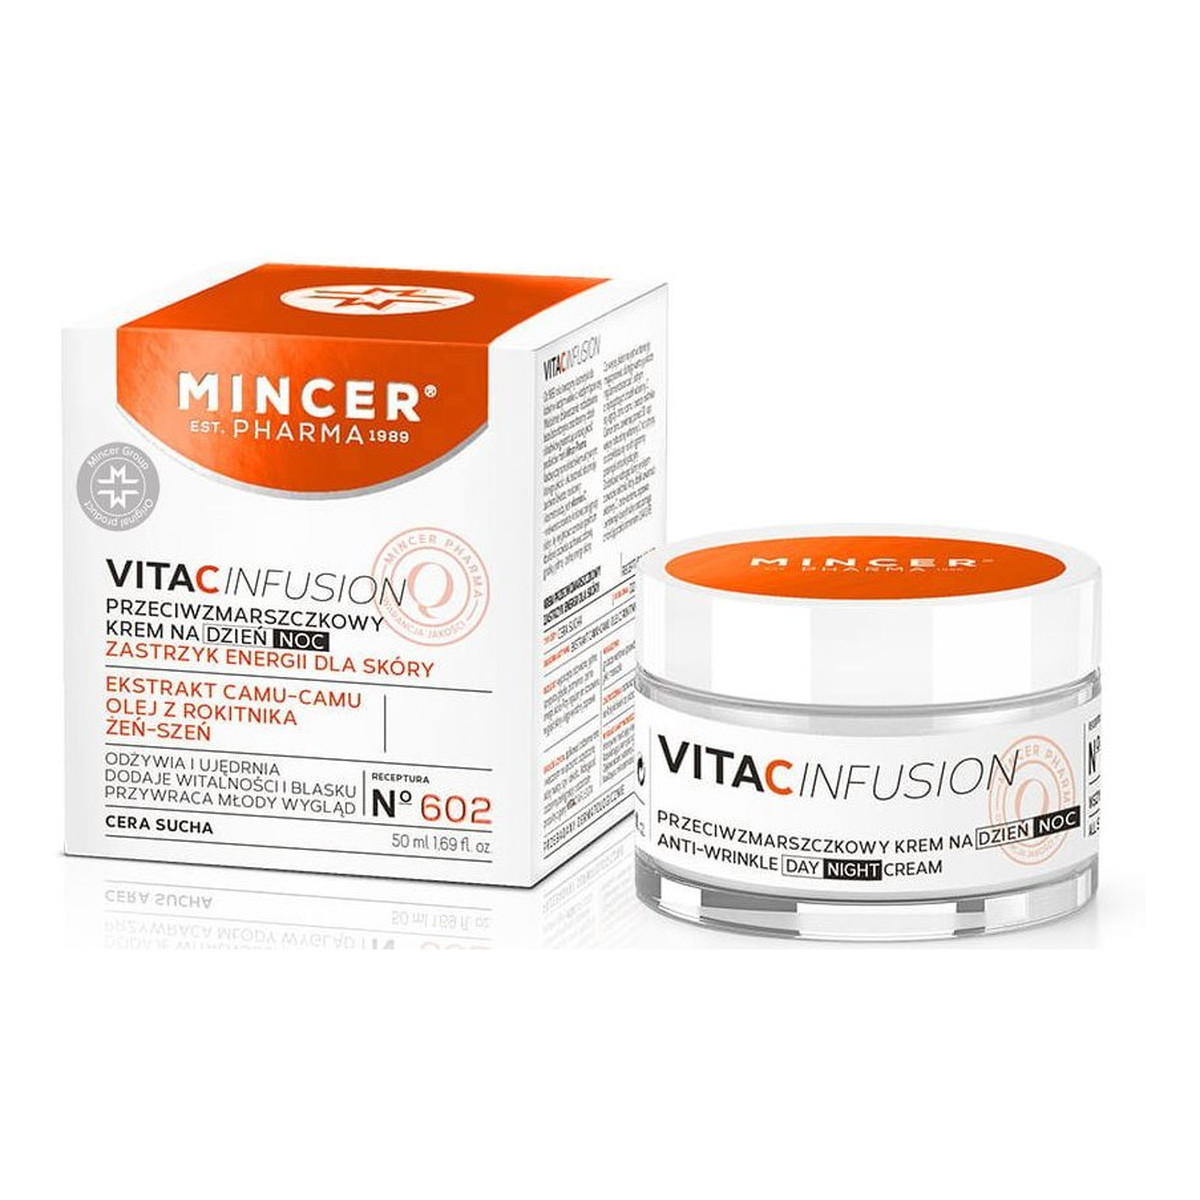 Mincer Pharma Vita C Infusion Kremy Przeciwzmarszczkowy No 602 i Nawilżający No 601